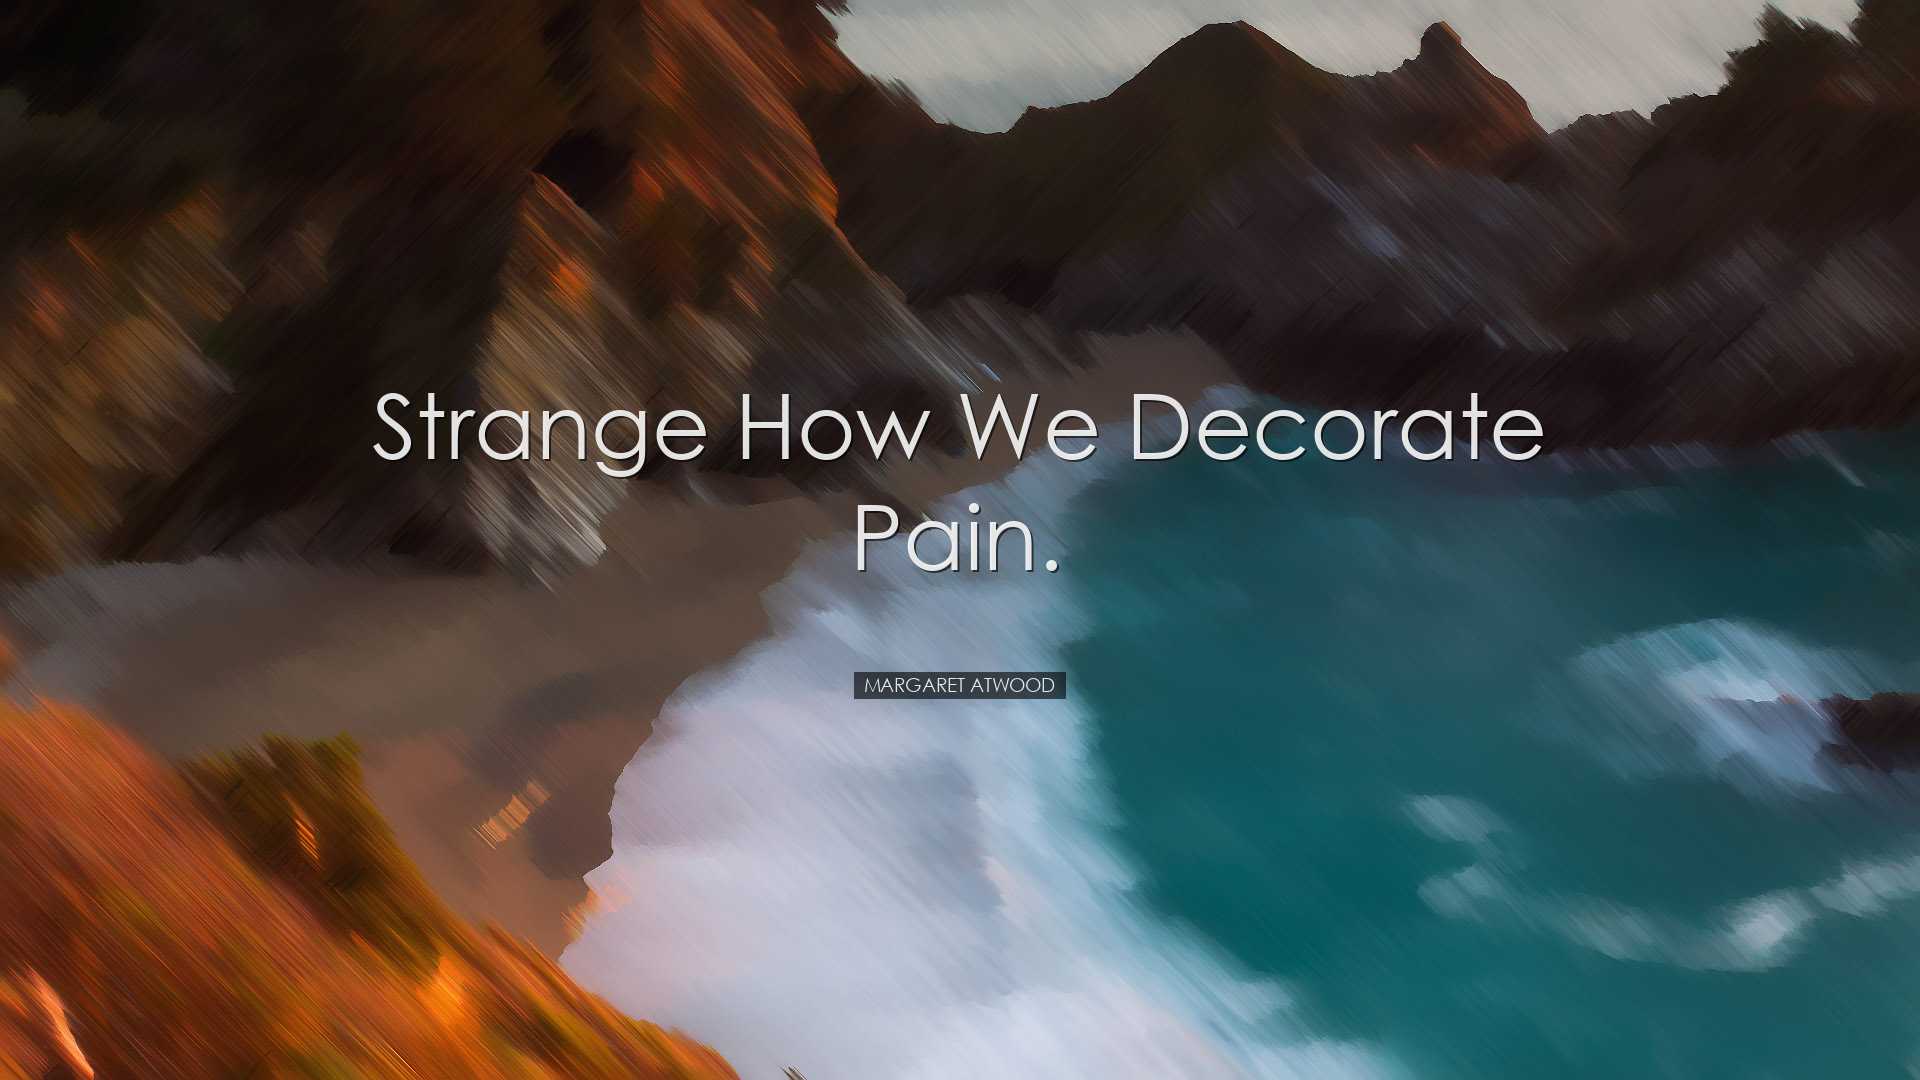 Strange how we decorate pain. - Margaret Atwood